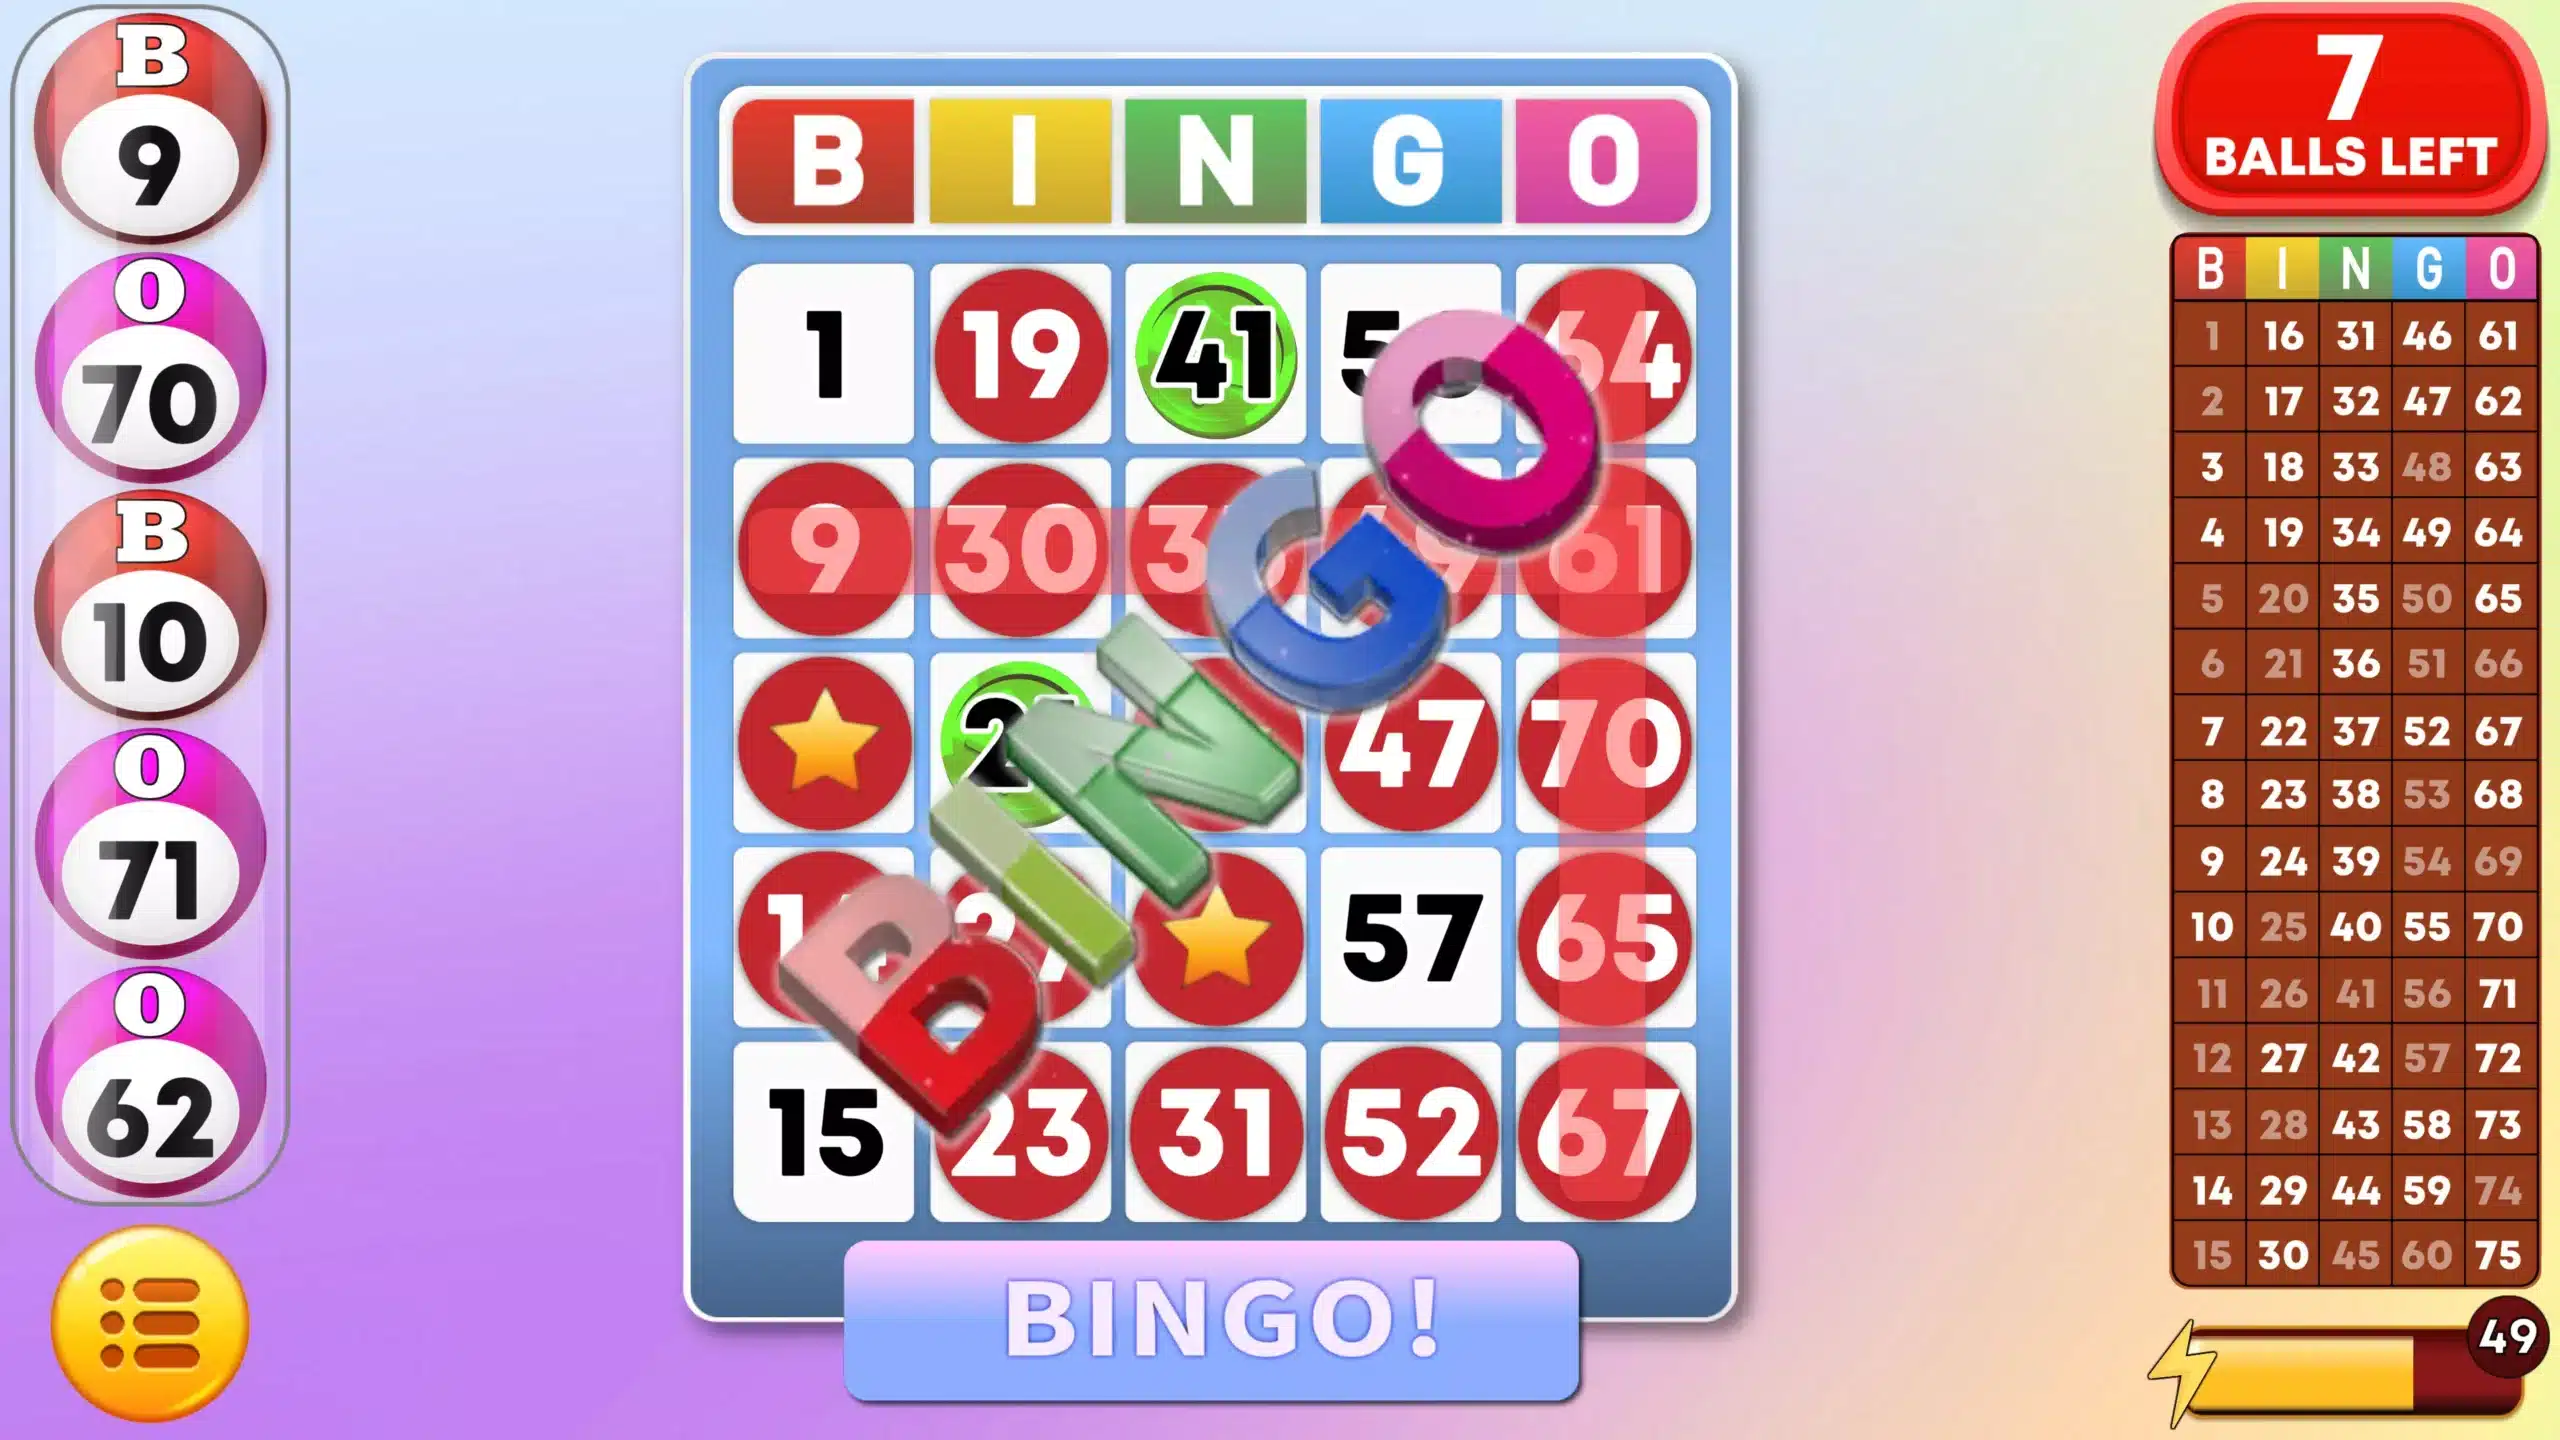 Bingo Image 7